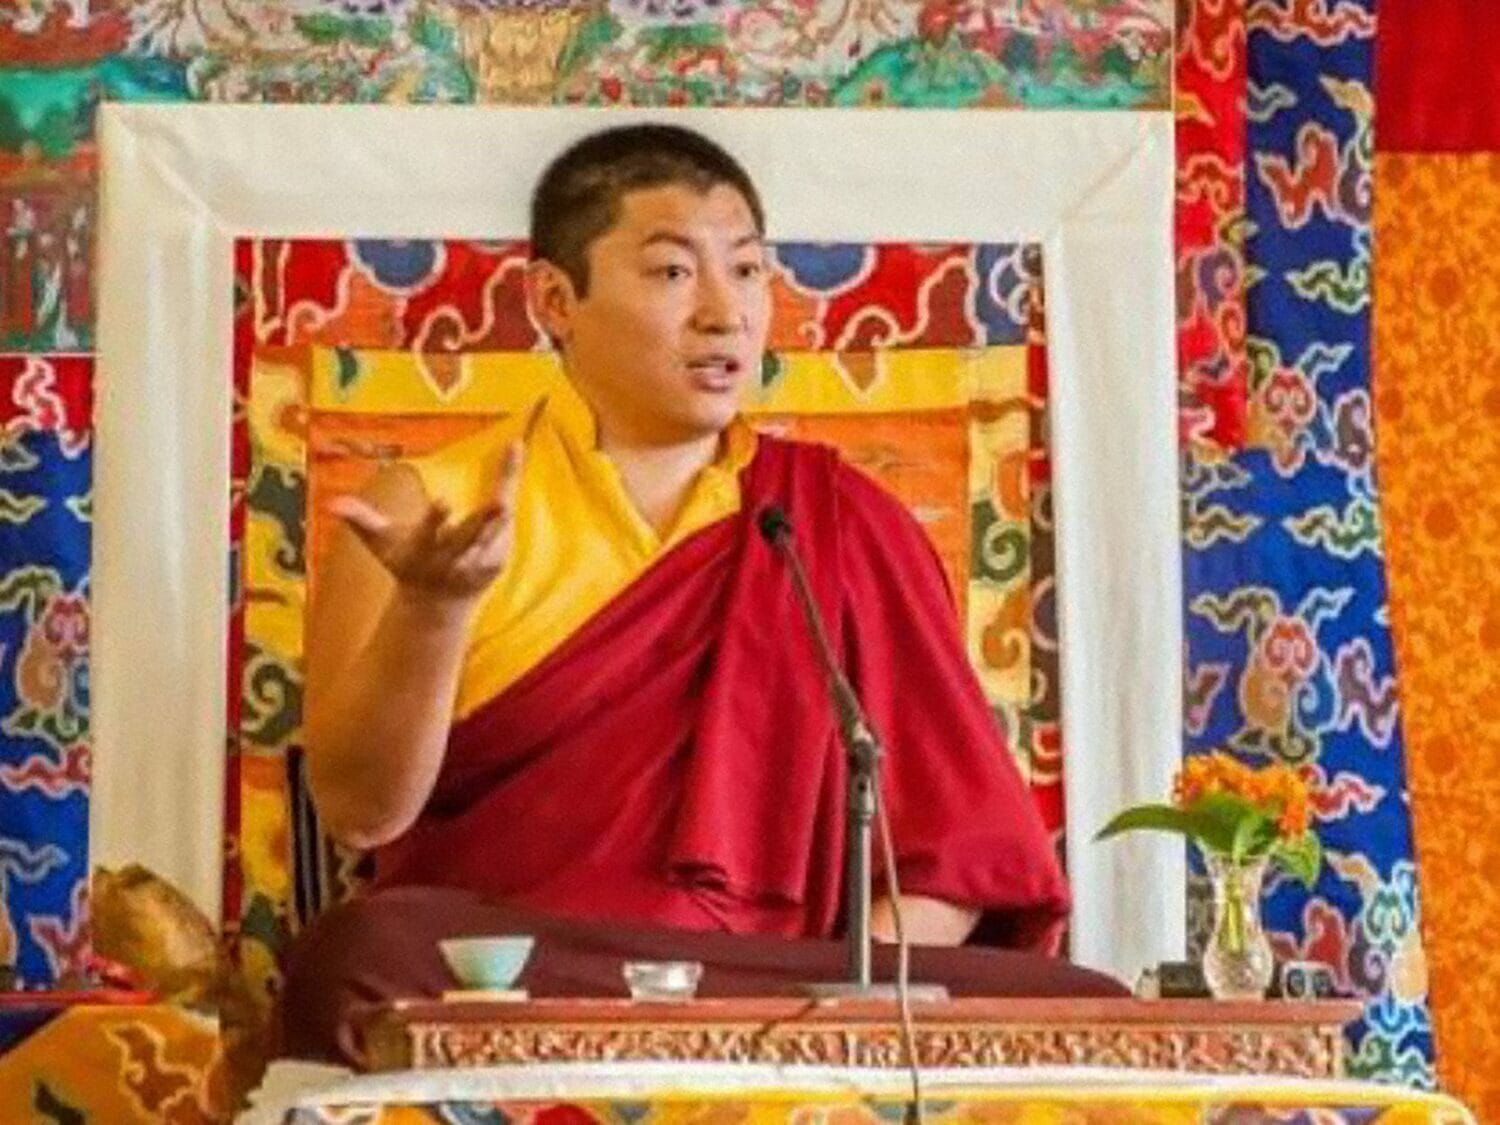 Este 23 de Junio, Phakchok Rinpoche ofrecerá la enseñanza “Practicar la compasión” en el Día de la Dakini del mes sagrado de Saga Dawa